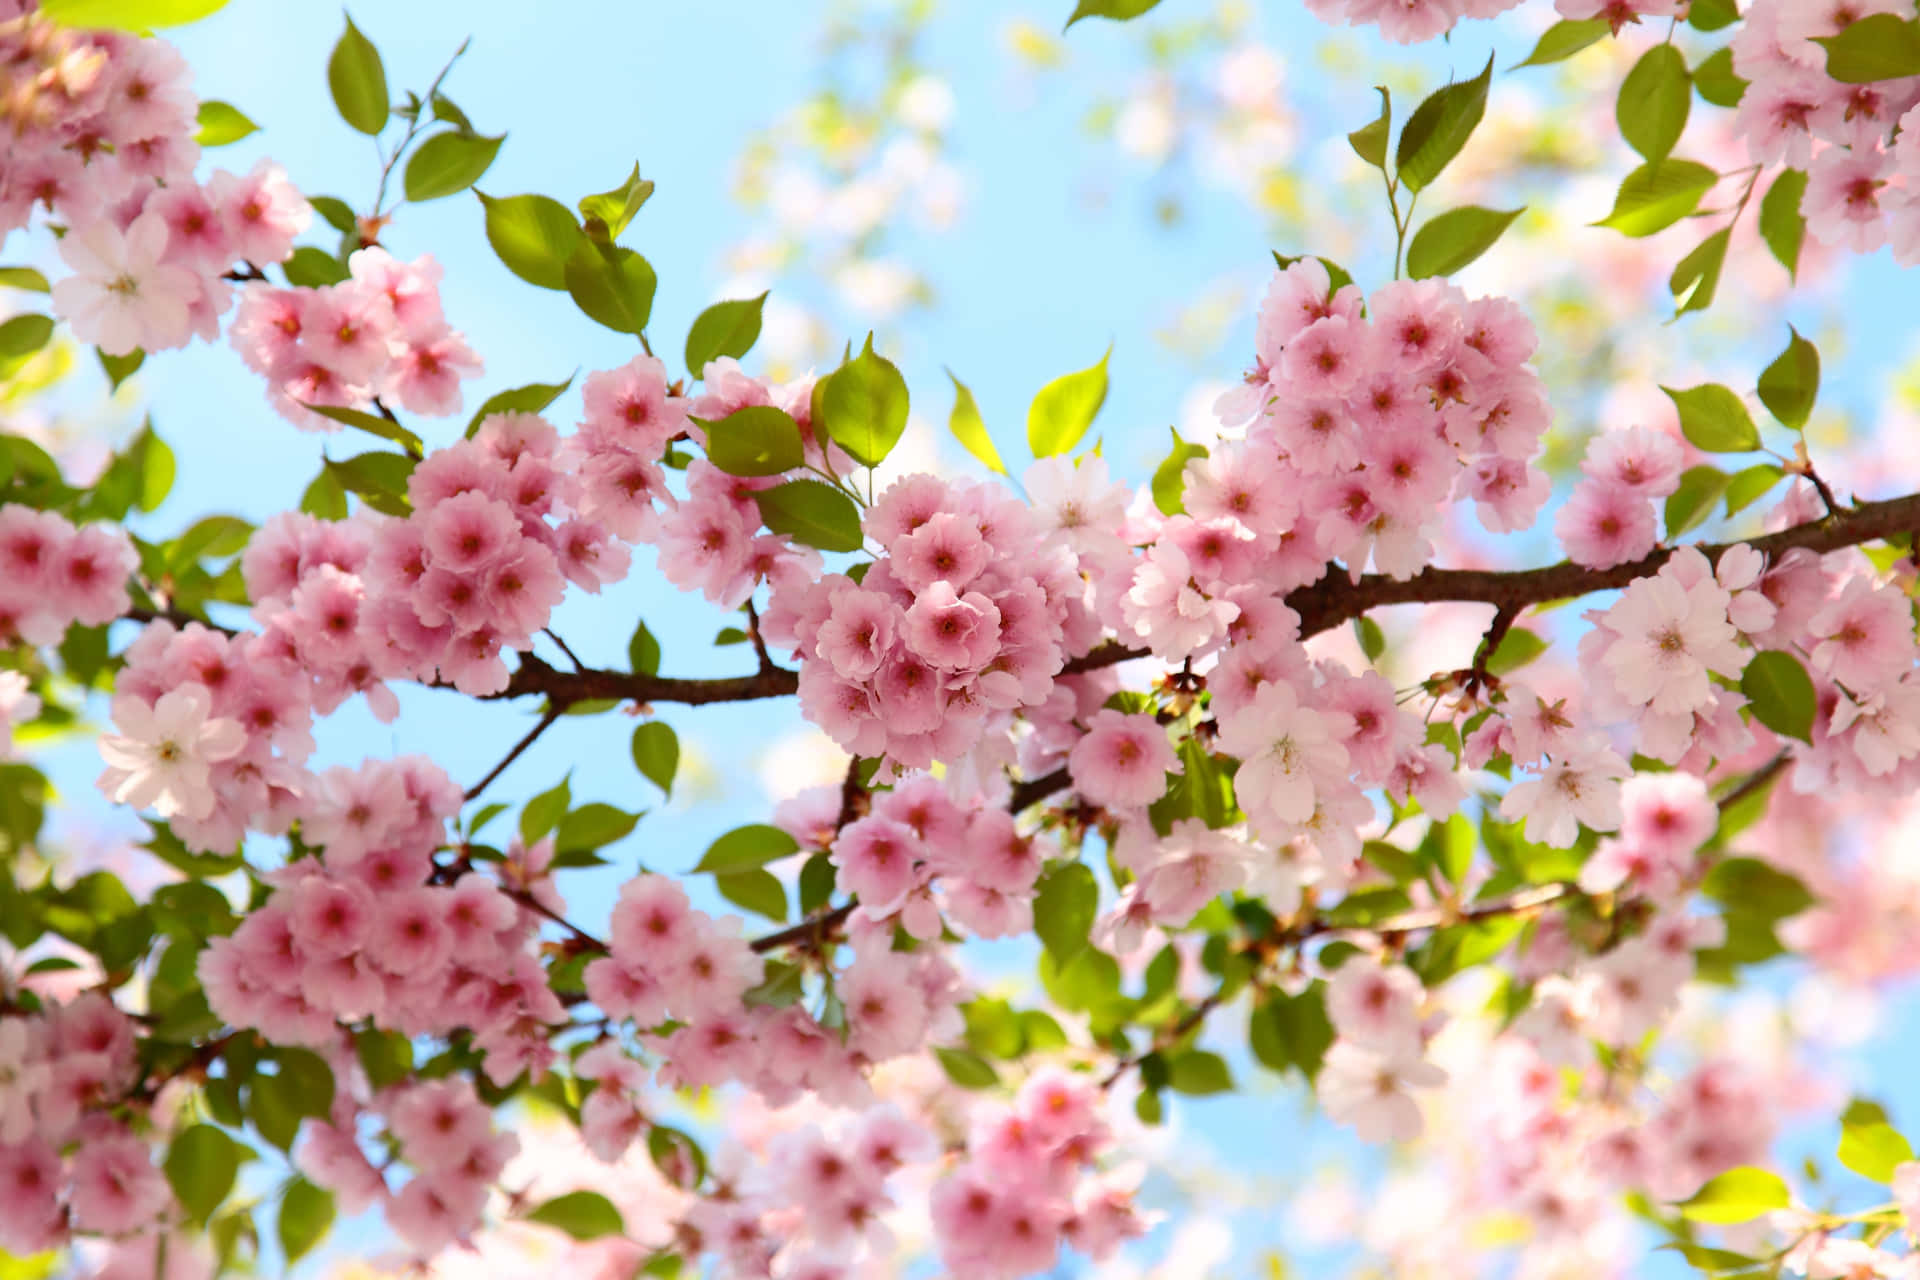 Vibrant Cherry Blossoms Against Blue Sky Wallpaper